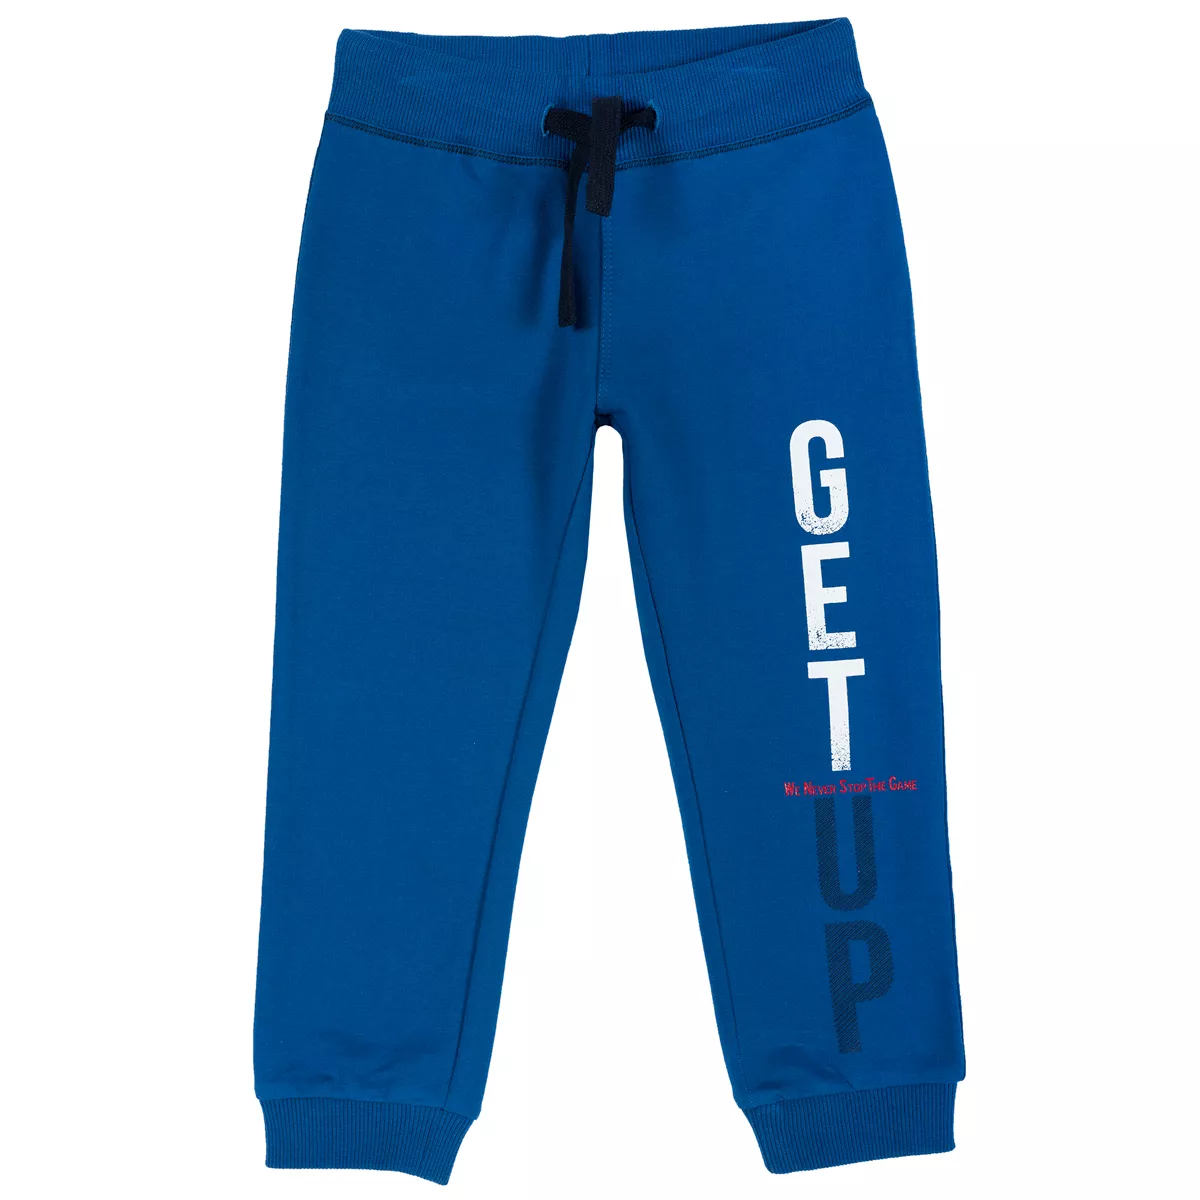 Pantalon trening copii, mansete elastice, albastru deschis, 116